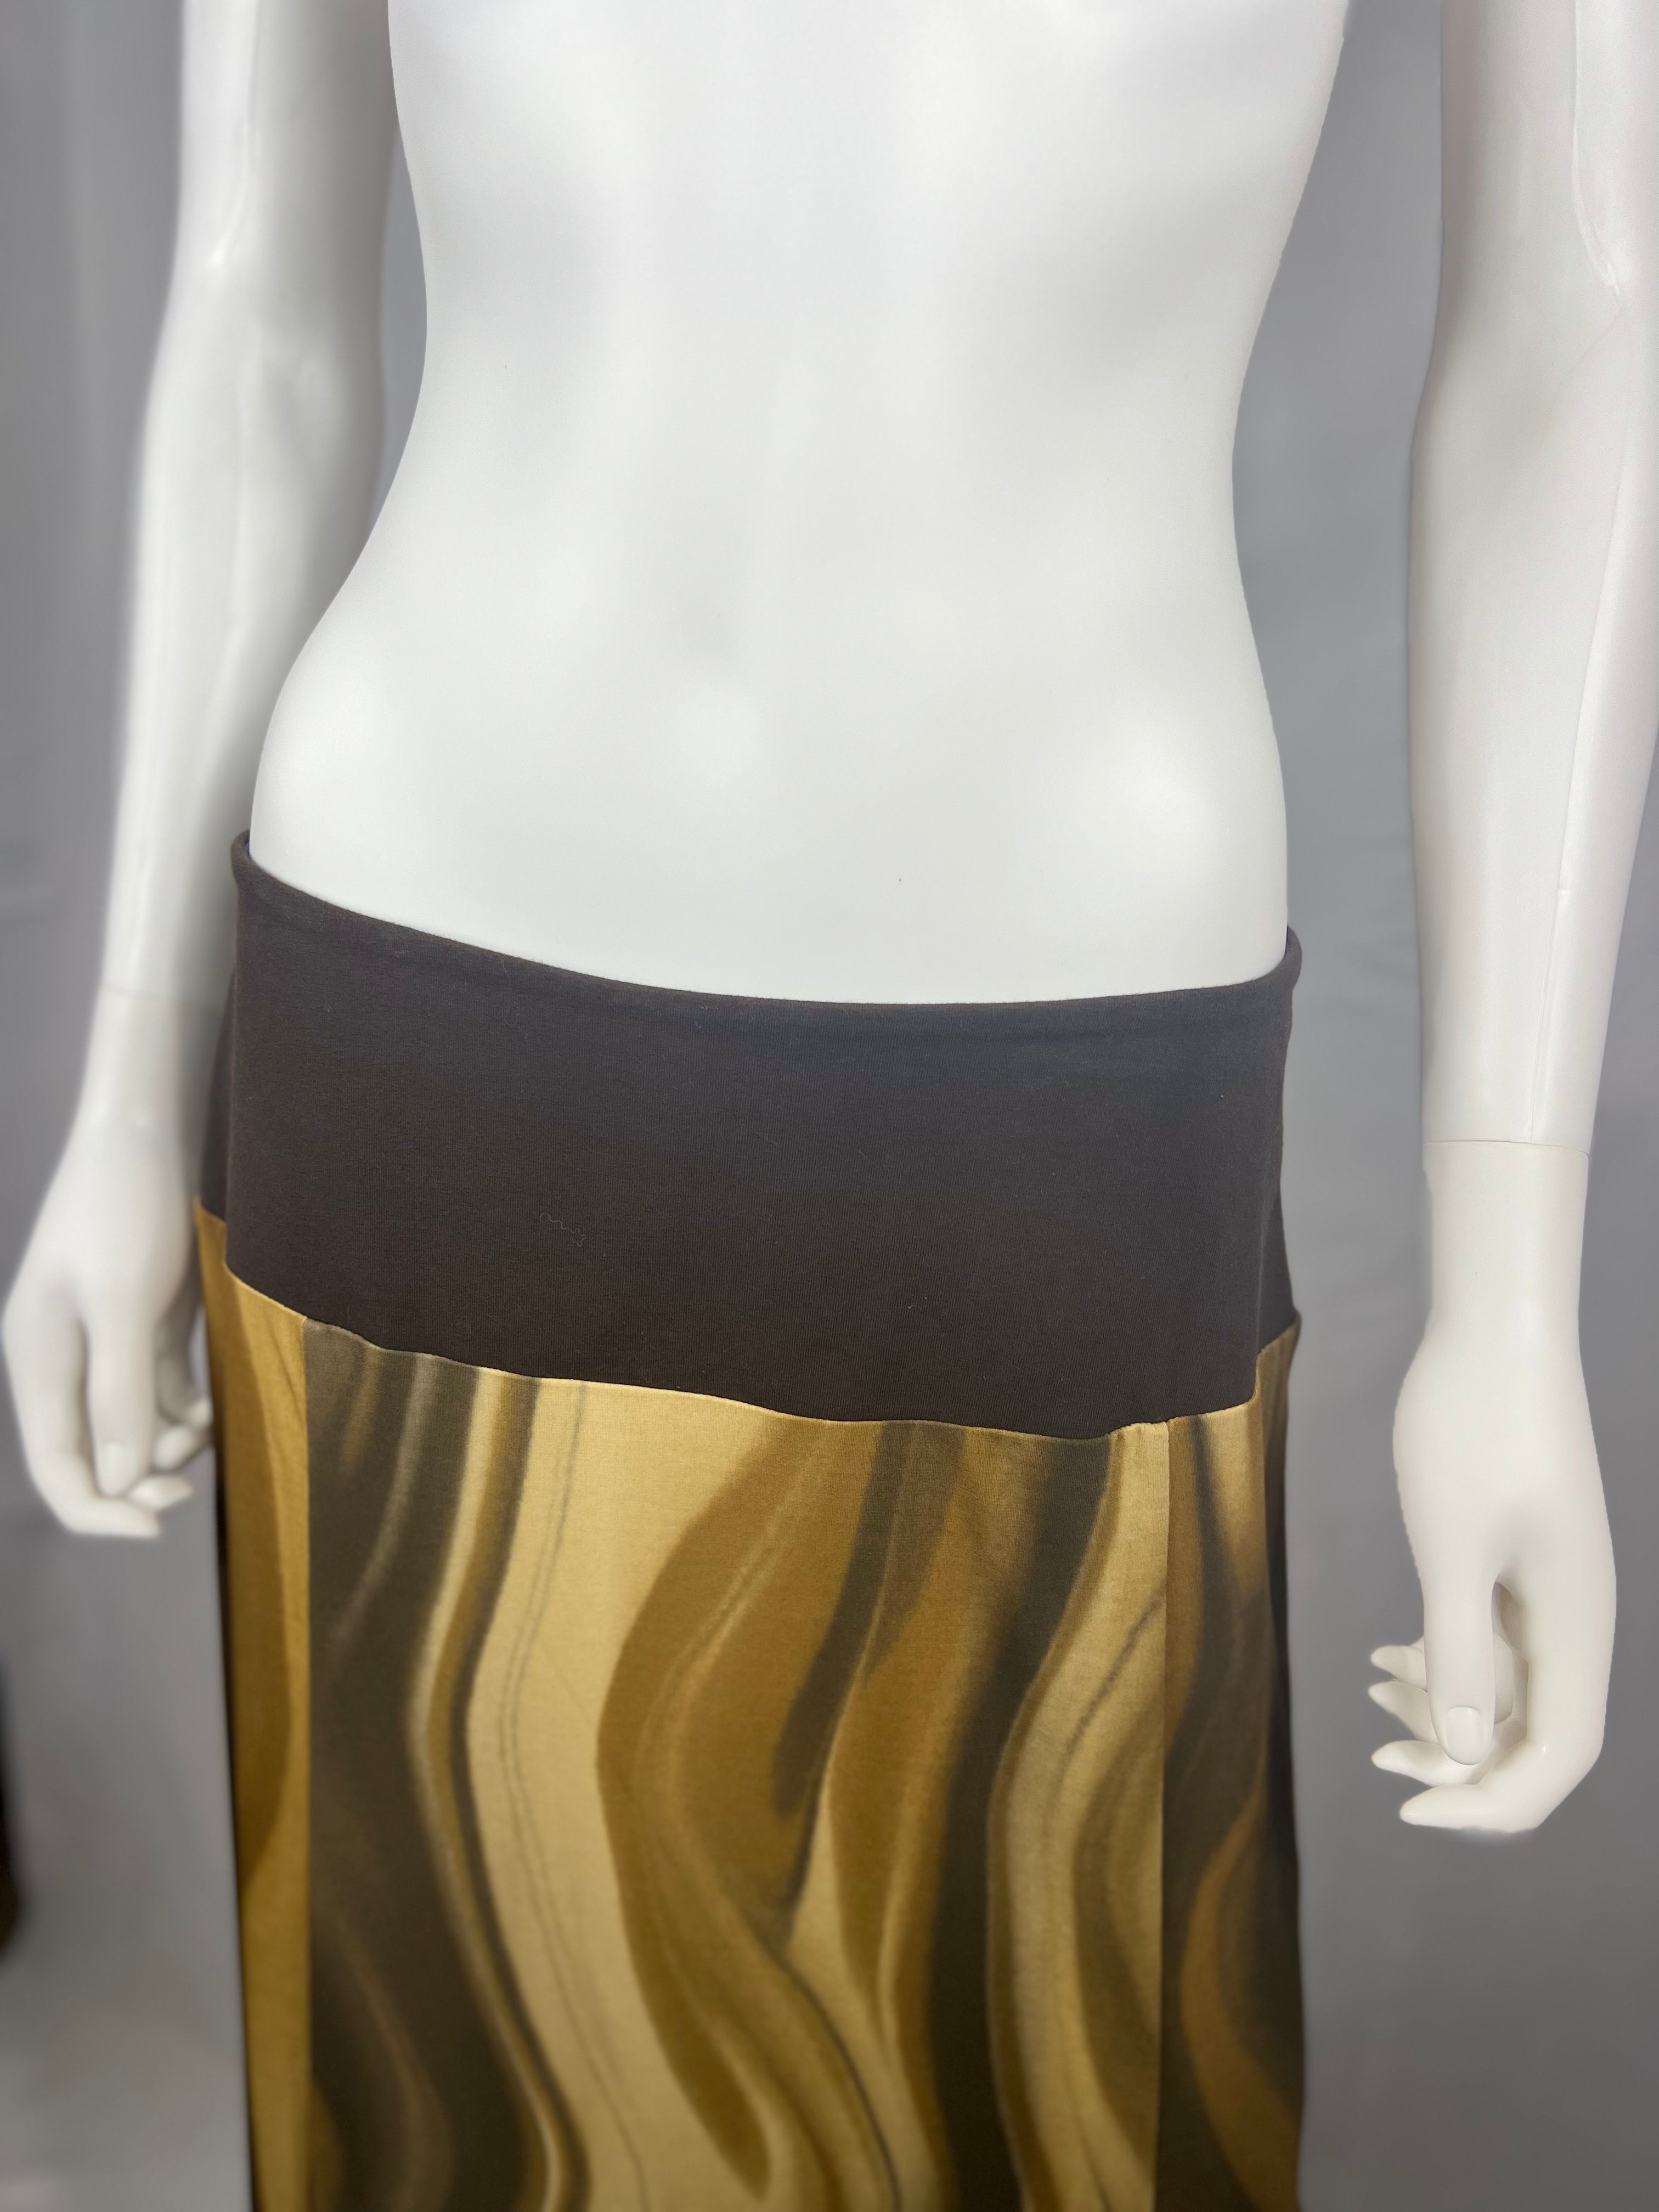 2000's Brown Wavy Slit Skirt